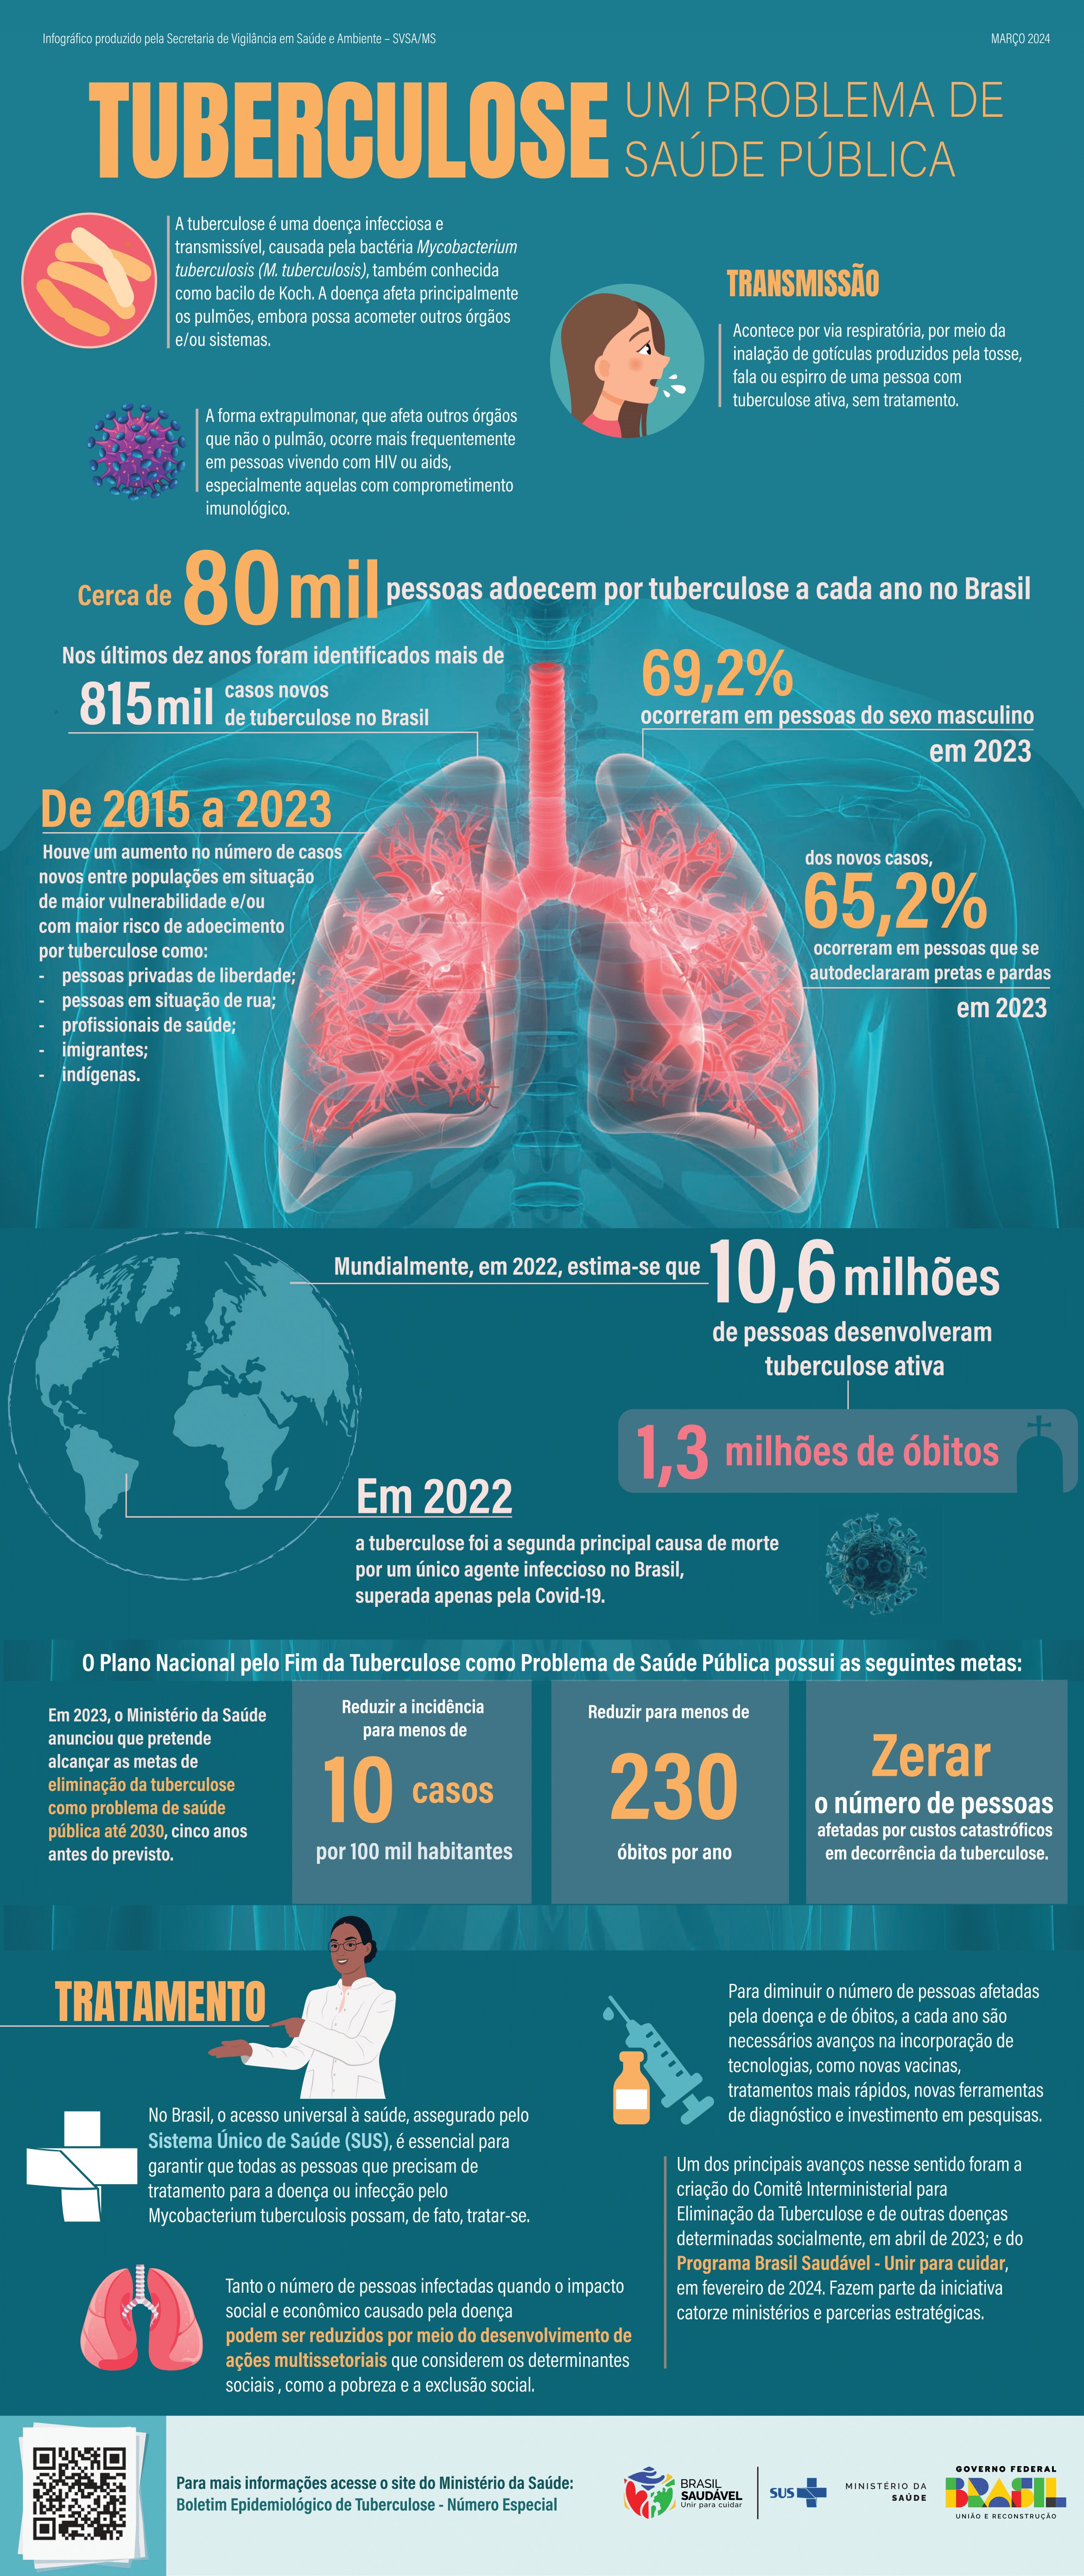 Infográfico - Tuberculose - um problema de saúde pública